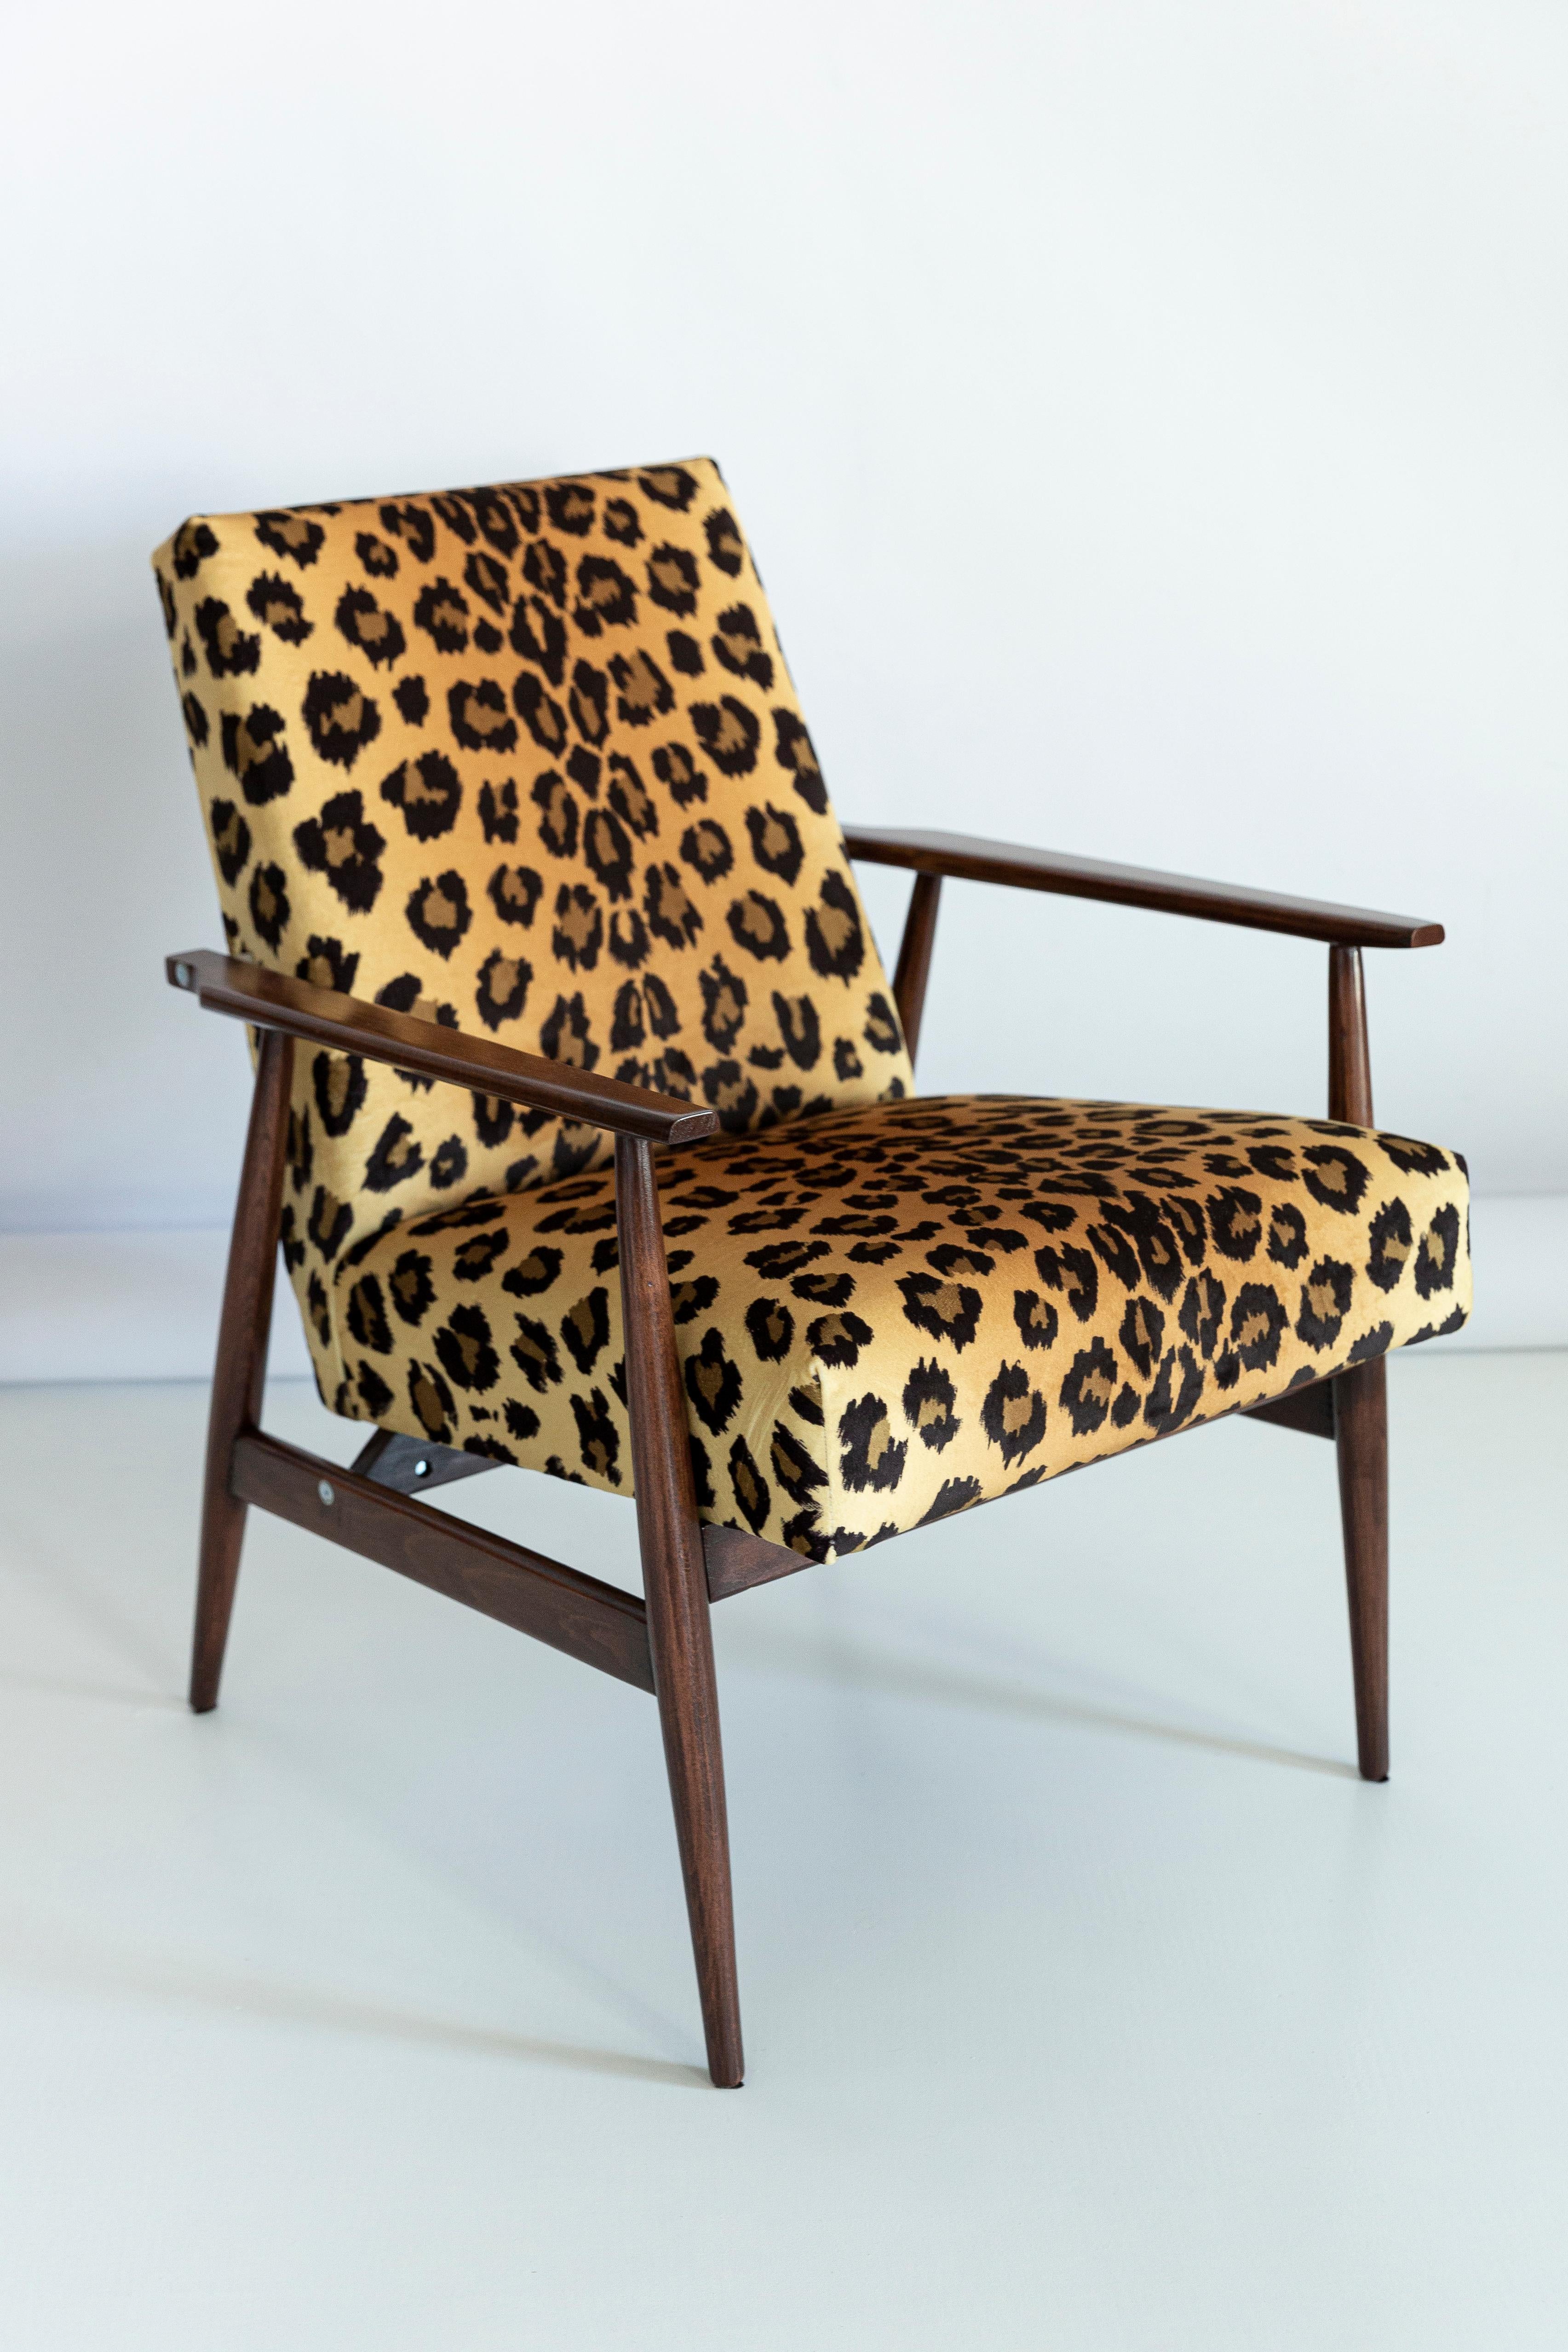 Ensemble de huit beaux fauteuils restaurés conçus par Henryk Lis. Meubles après une rénovation complète de la menuiserie et de la tapisserie. Le tissu, qui recouvre un dossier et une assise, est un revêtement en velours italien de haute qualité